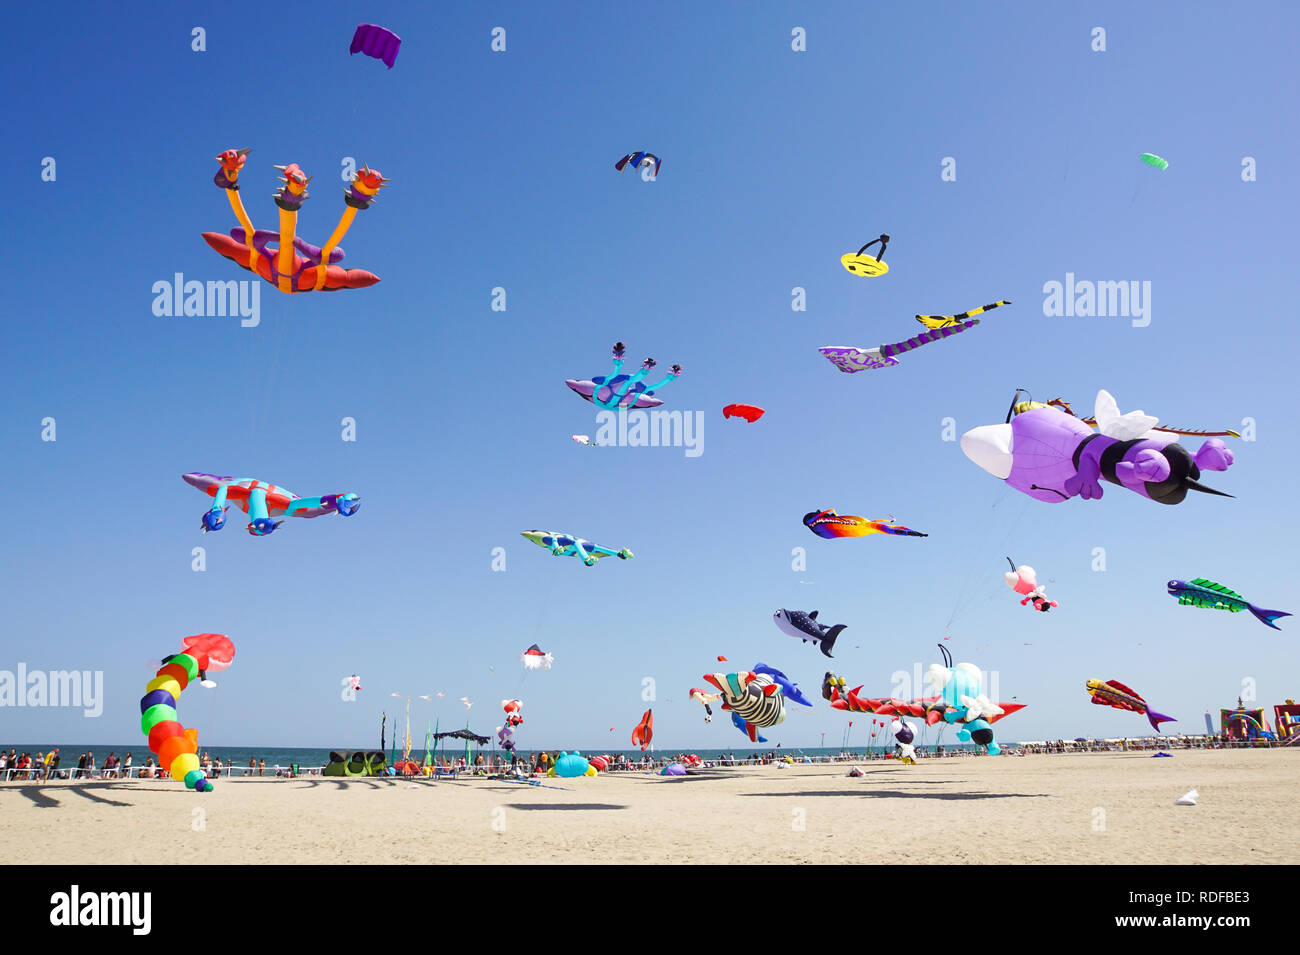 CERVIA, ITALIEN - 1. Mai: Himmel voller Drachen für International Kite Festival am 1. Mai 2017 in Cervia, Italien. Das Festival vereint Drachenflieger aus der ganzen Welt jedes Jahr seit 1981. Stockfoto